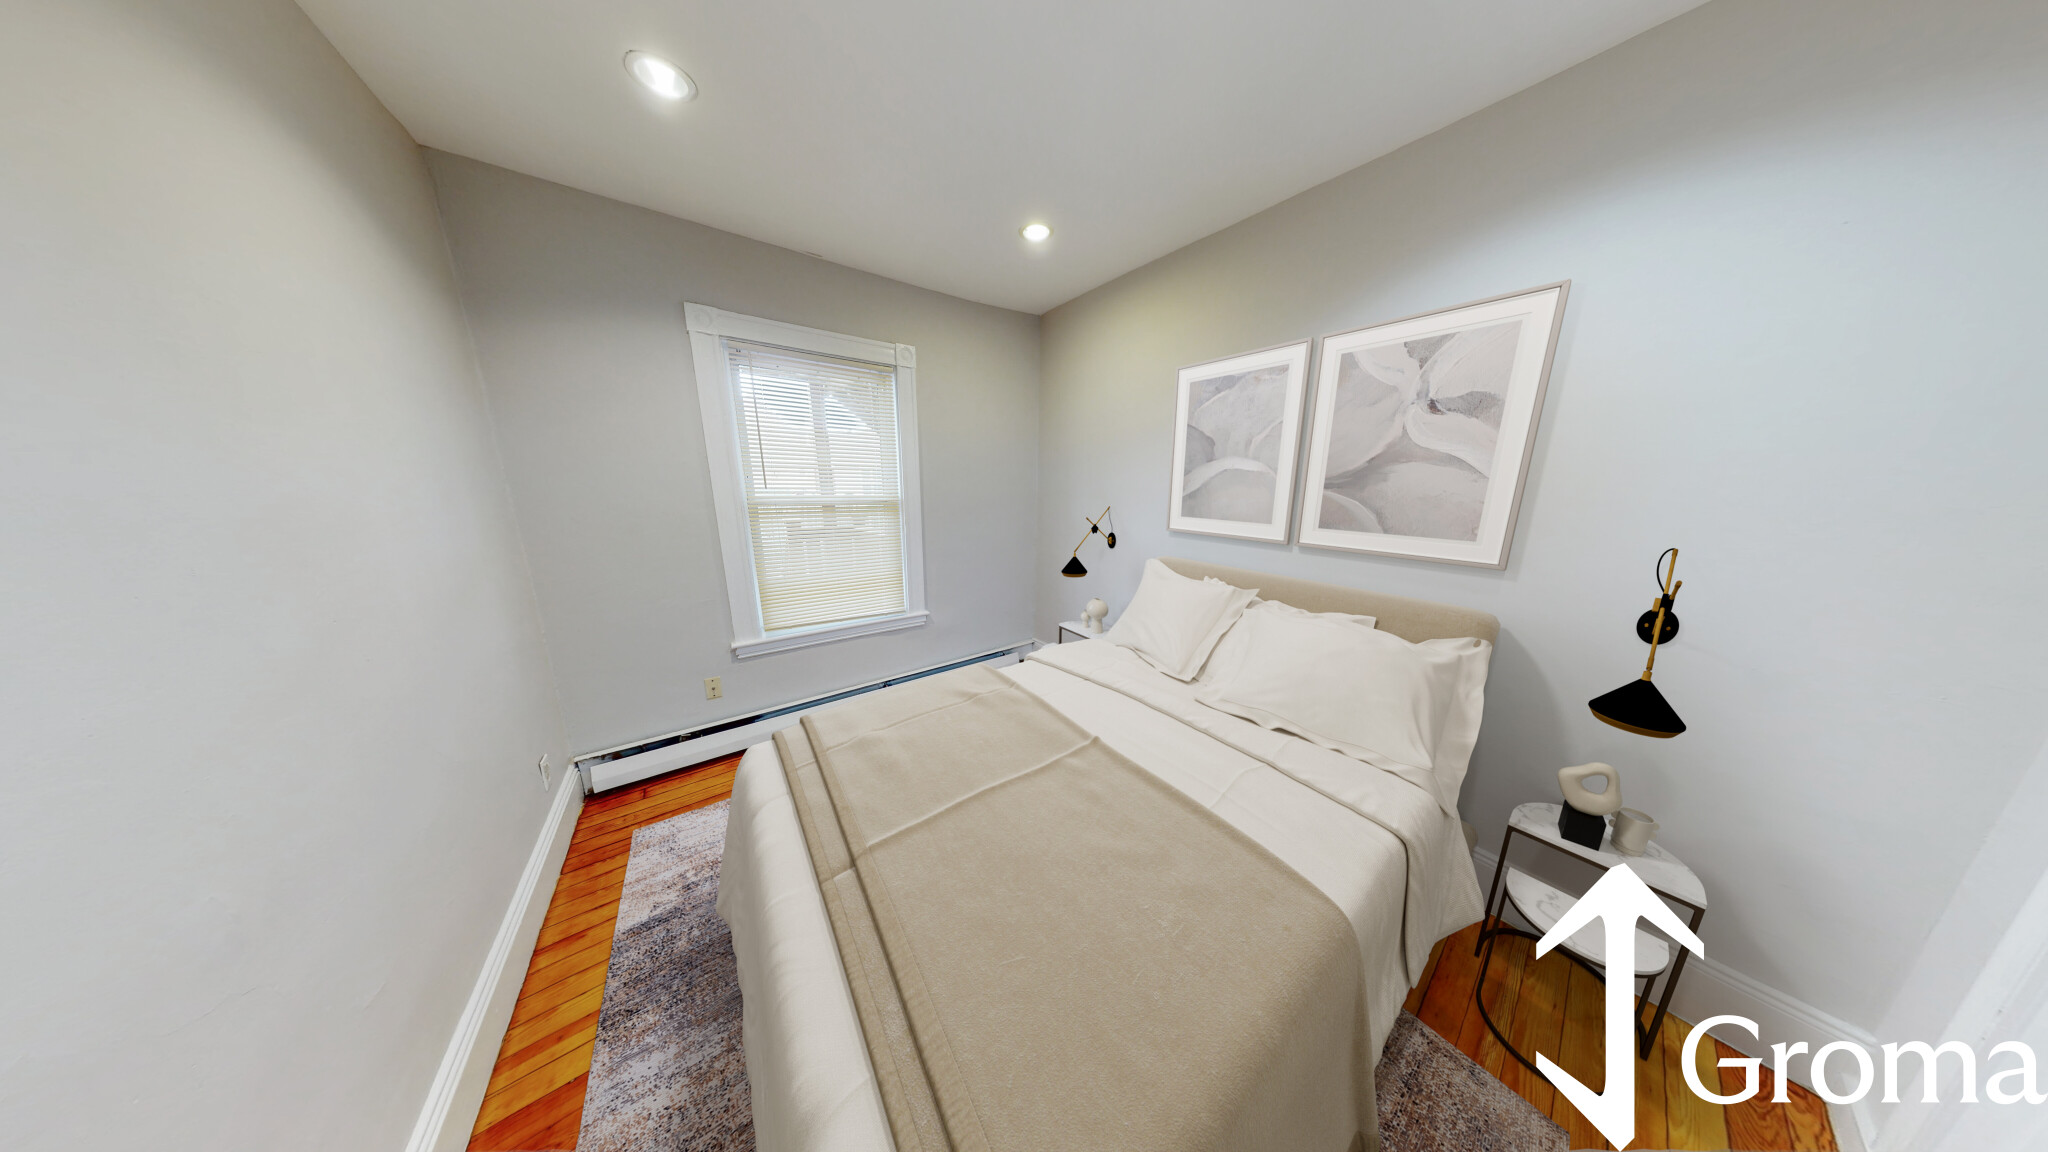 Photos of apartment on Fenton,Boston MA 02122